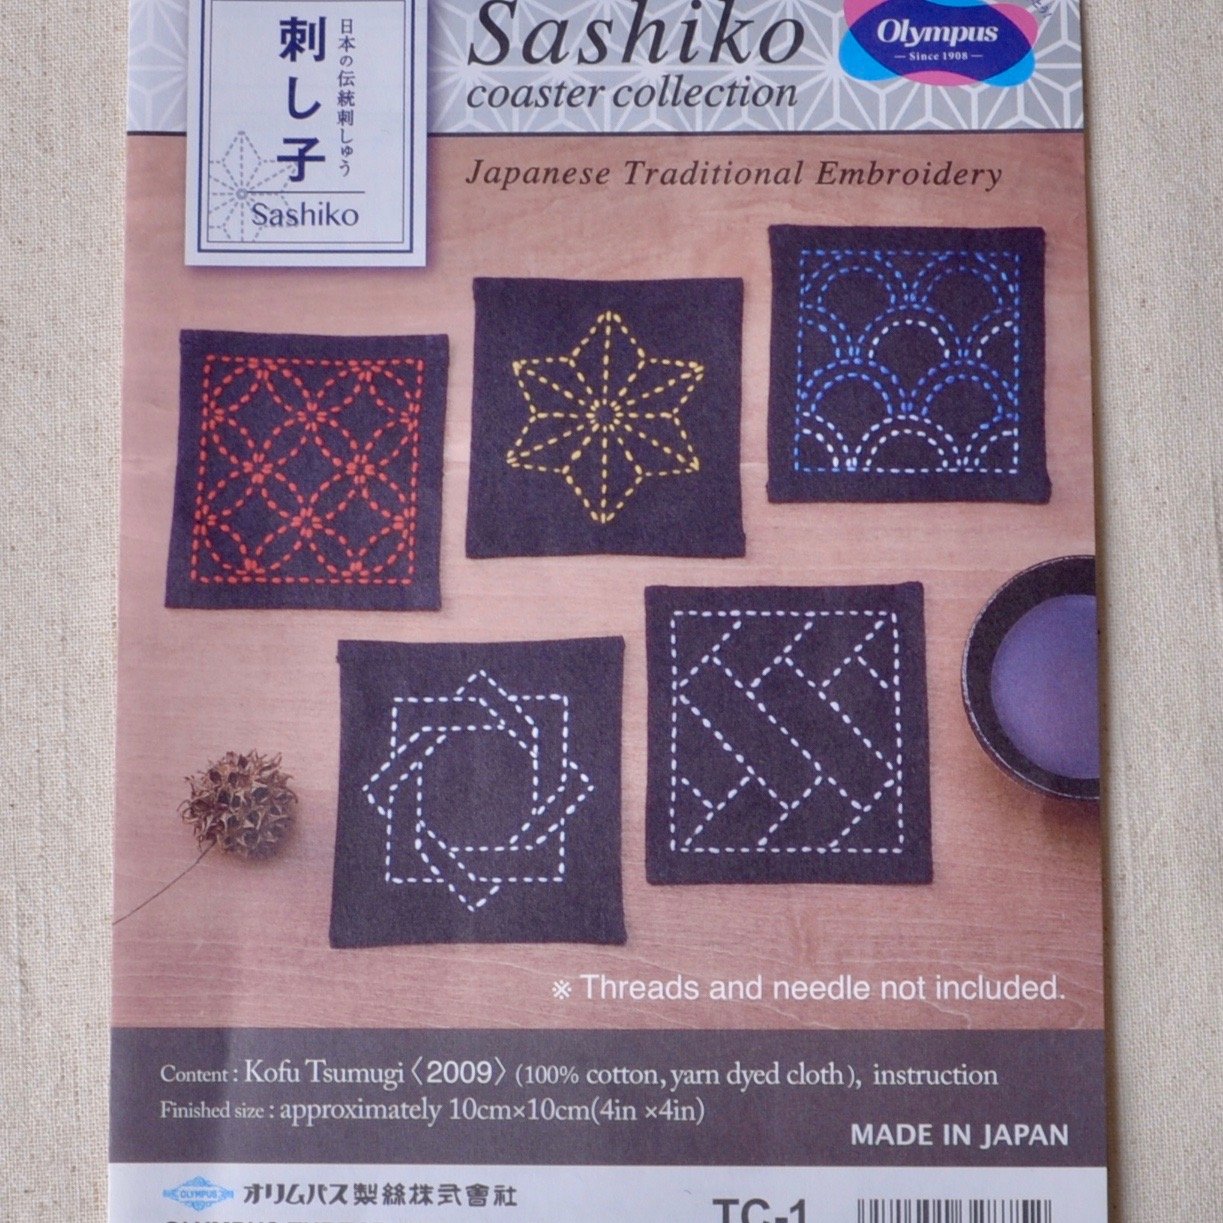 Sashiko Needle, Sashiko, Products information, Hand-crafting, Olympus